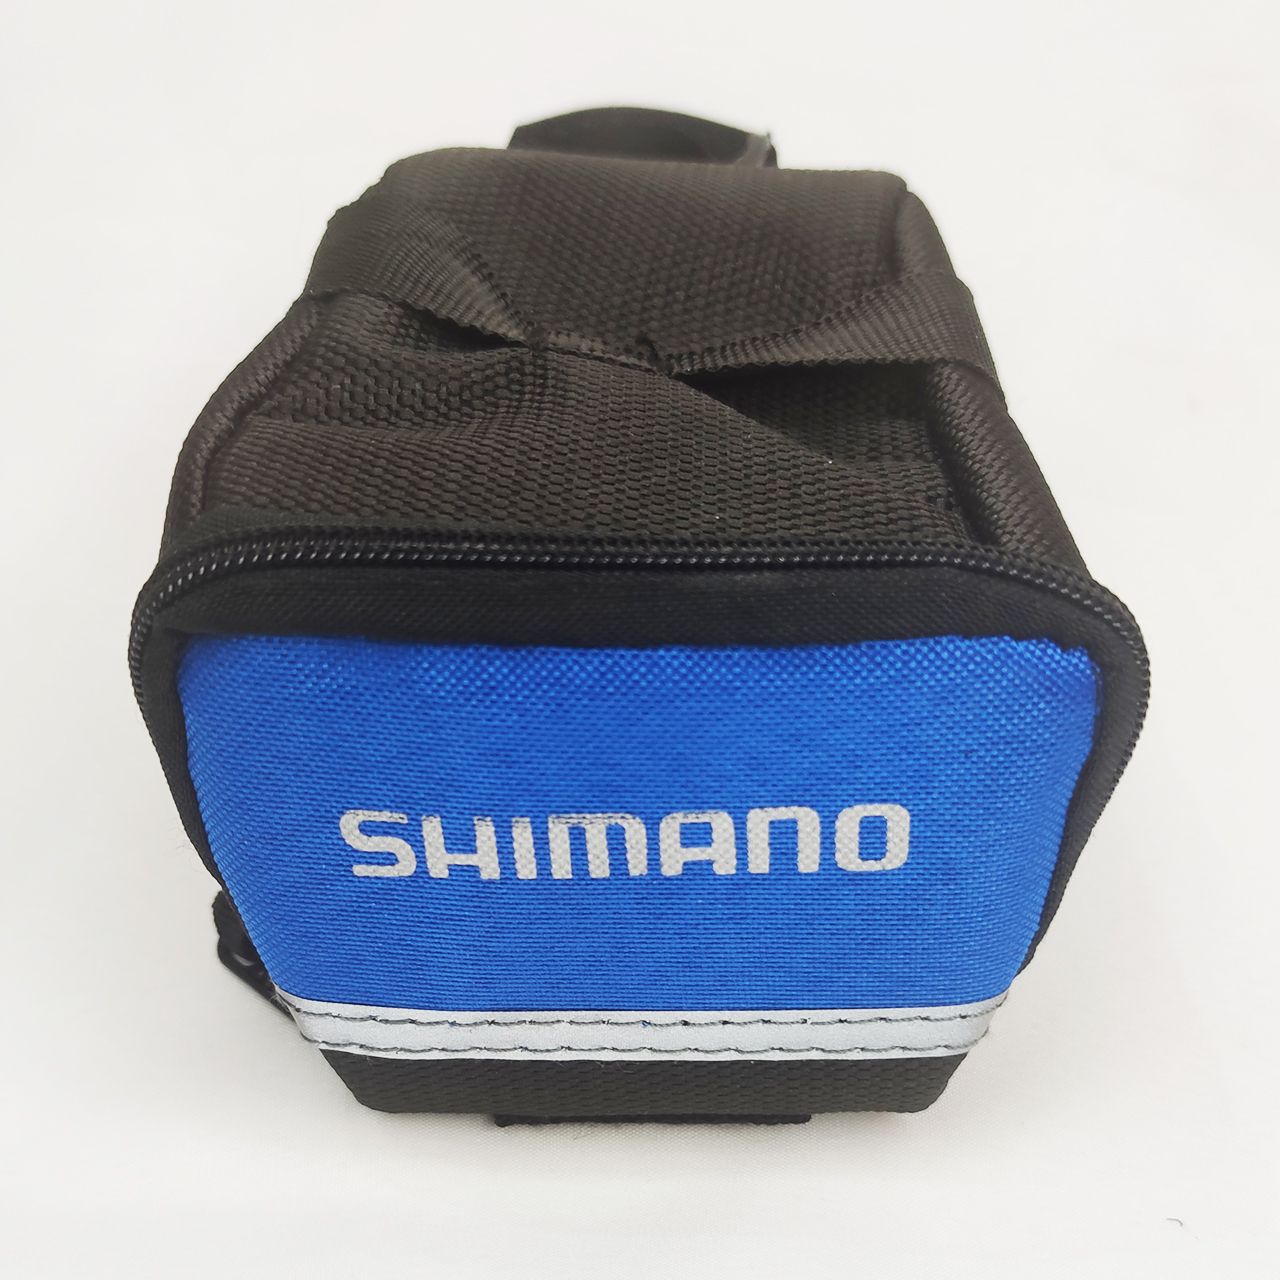 کیف زیر زین دوچرخه شیمانو مدل 01 -  - 9